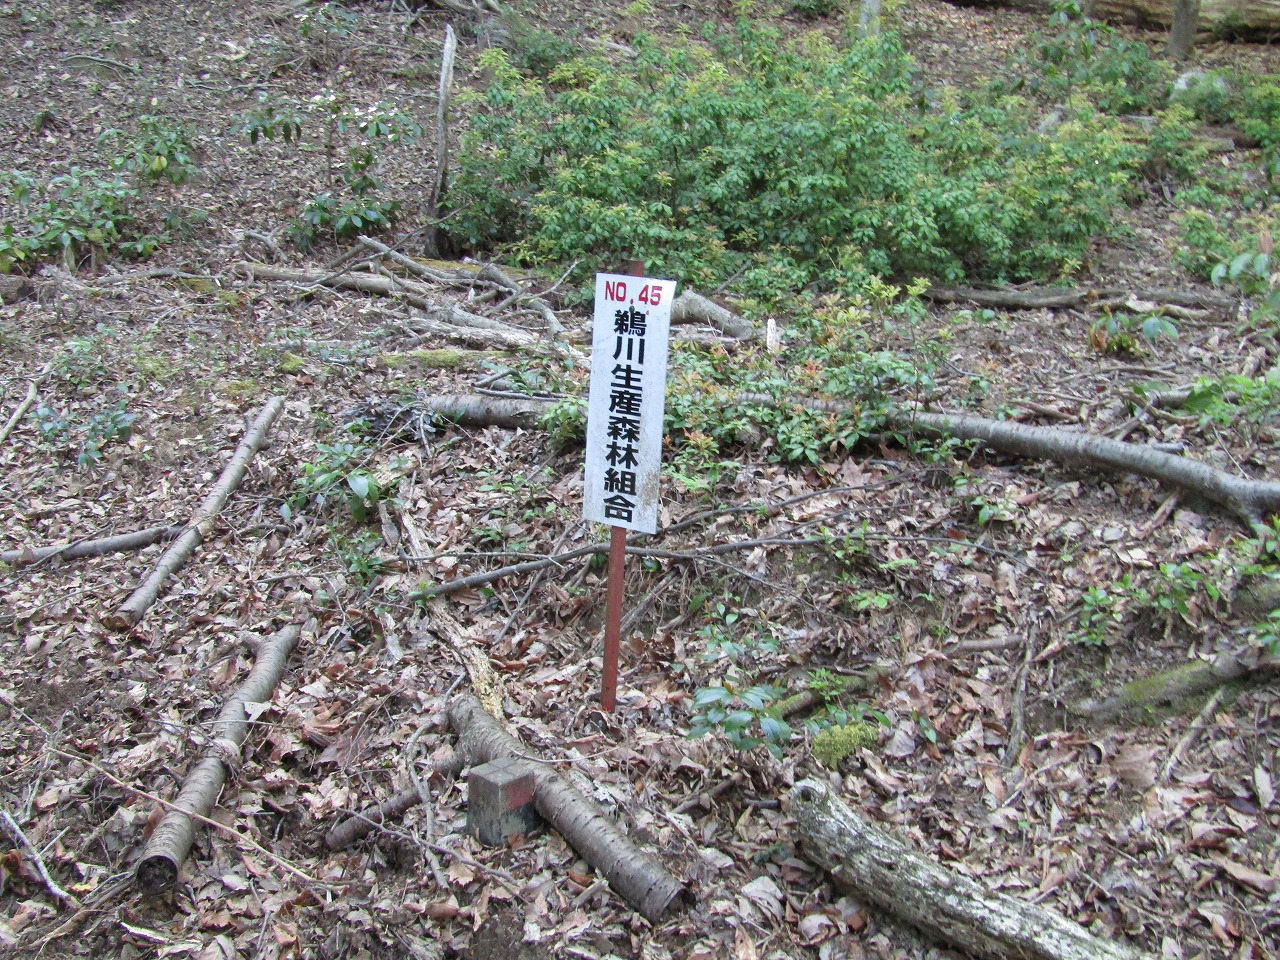 鵜川生産森林組合の看板、N0,45